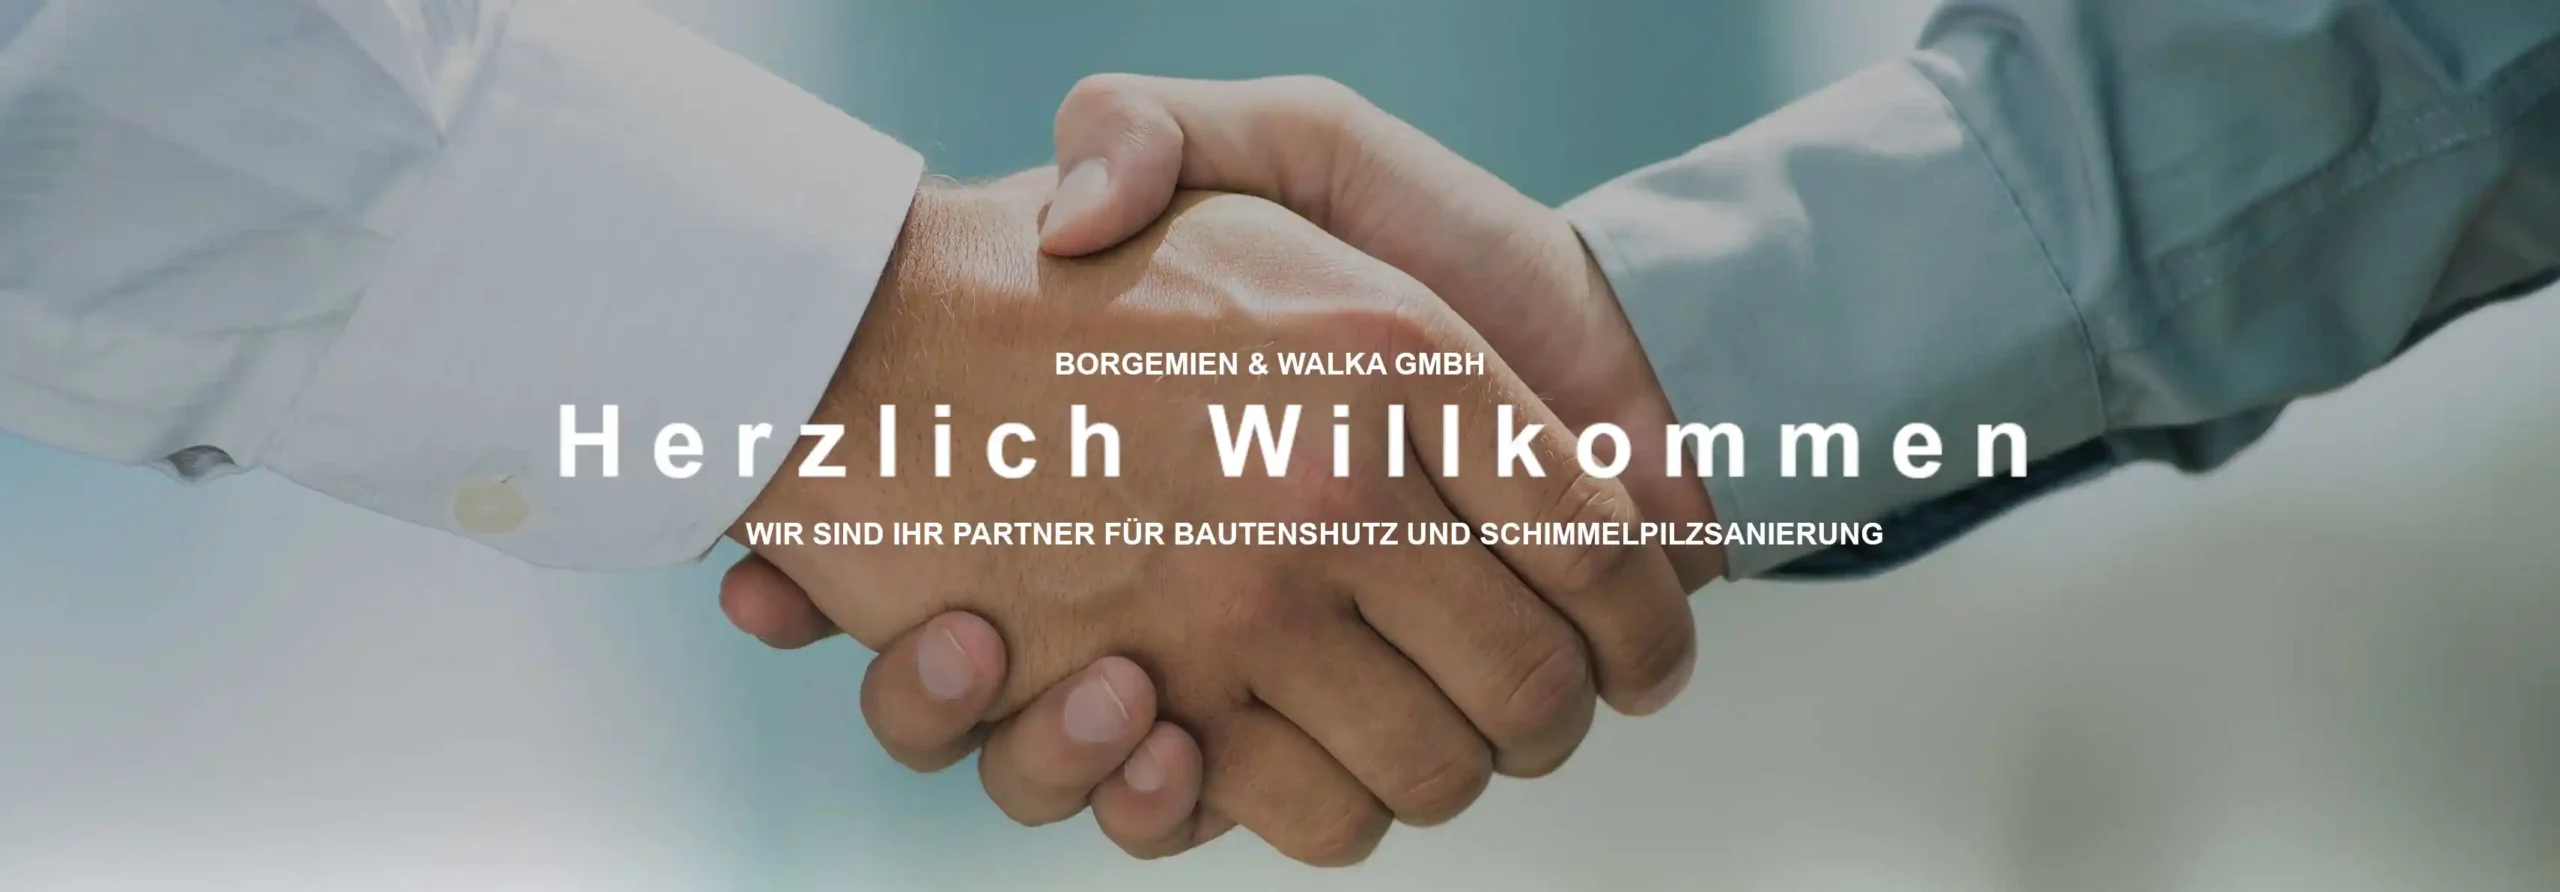 Boegmien & Walka GmbH